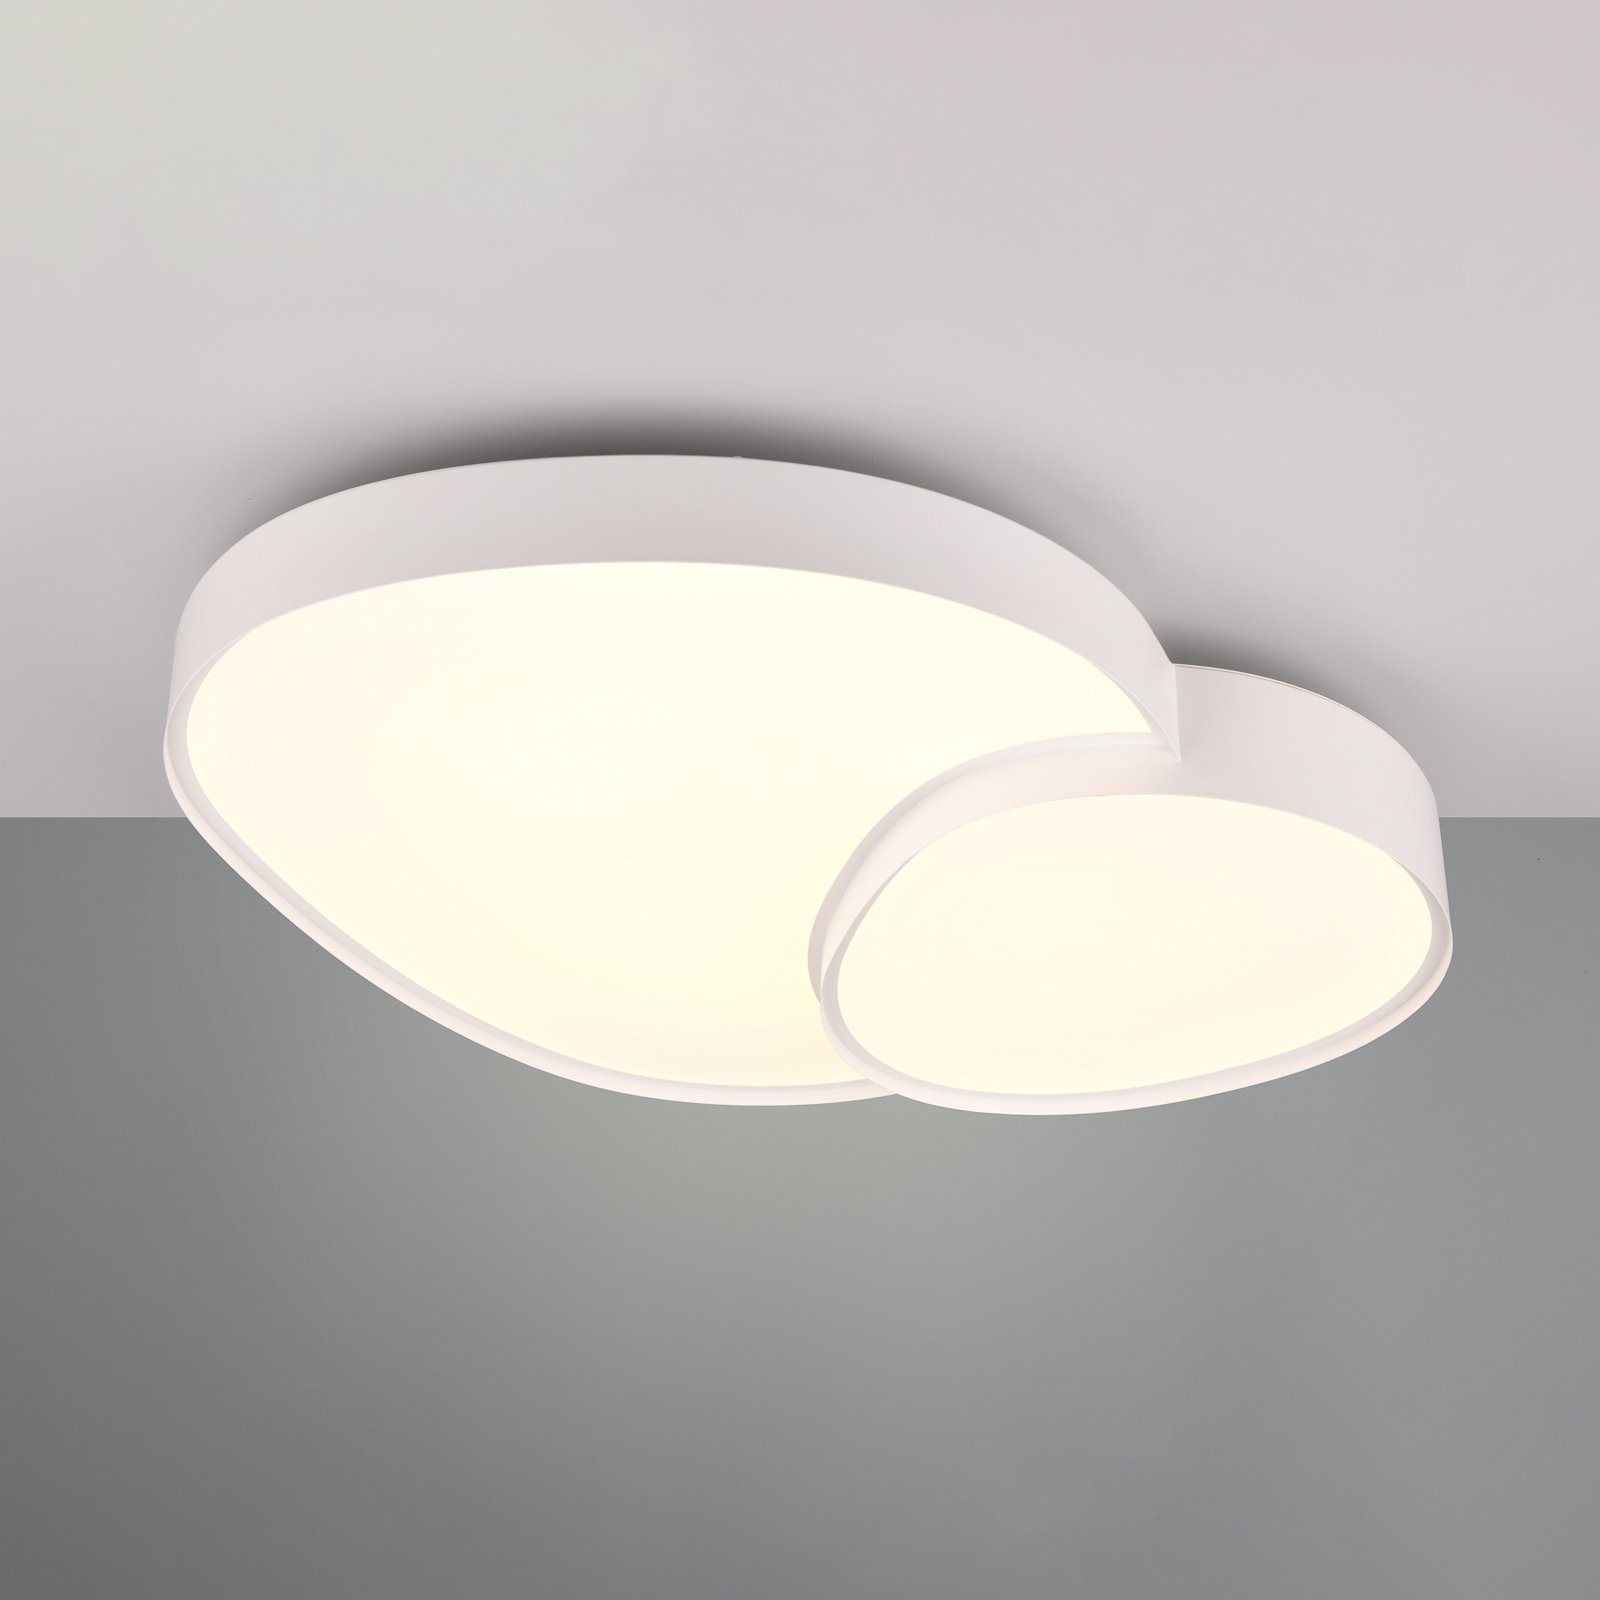 LED stropna svetilka Rise, bela, 77 x 63 cm, CCT, možnost zatemnitve